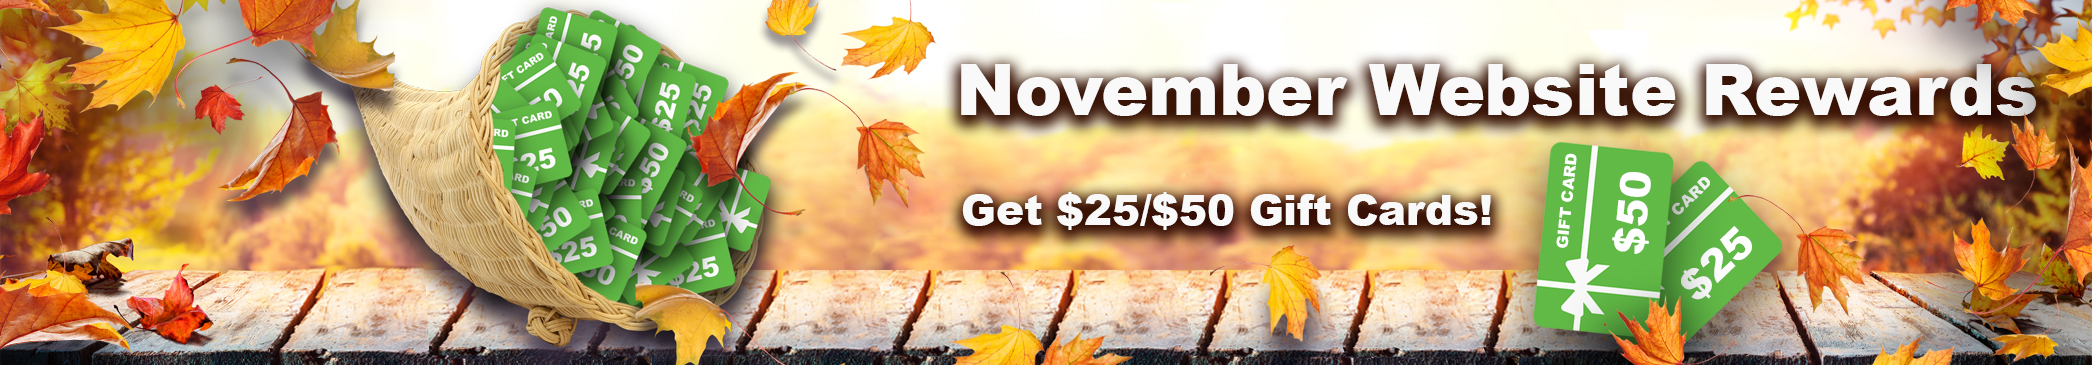 November Website Rewards: Get $25/$50 Gift Cards!